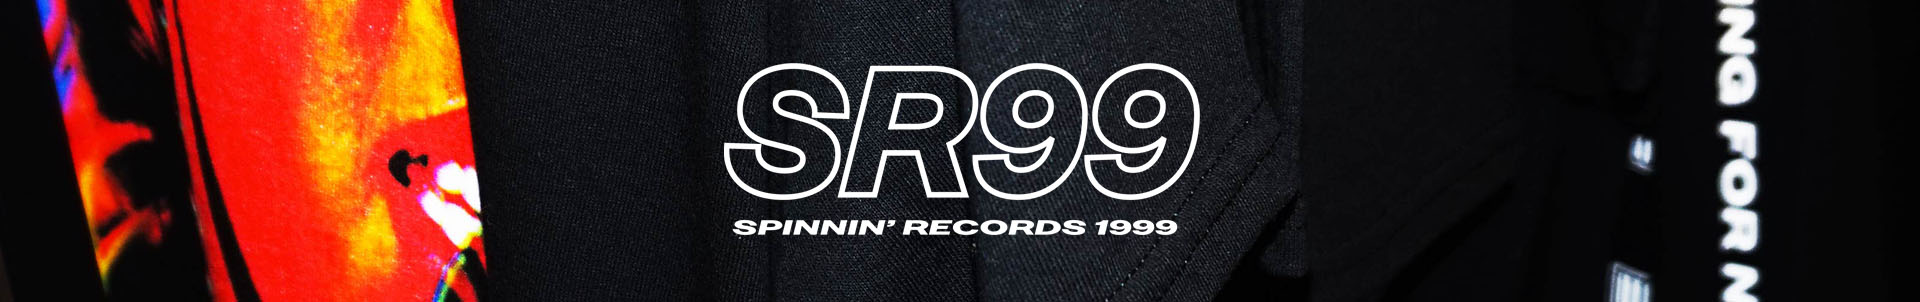 New merchandise - we present SR99!